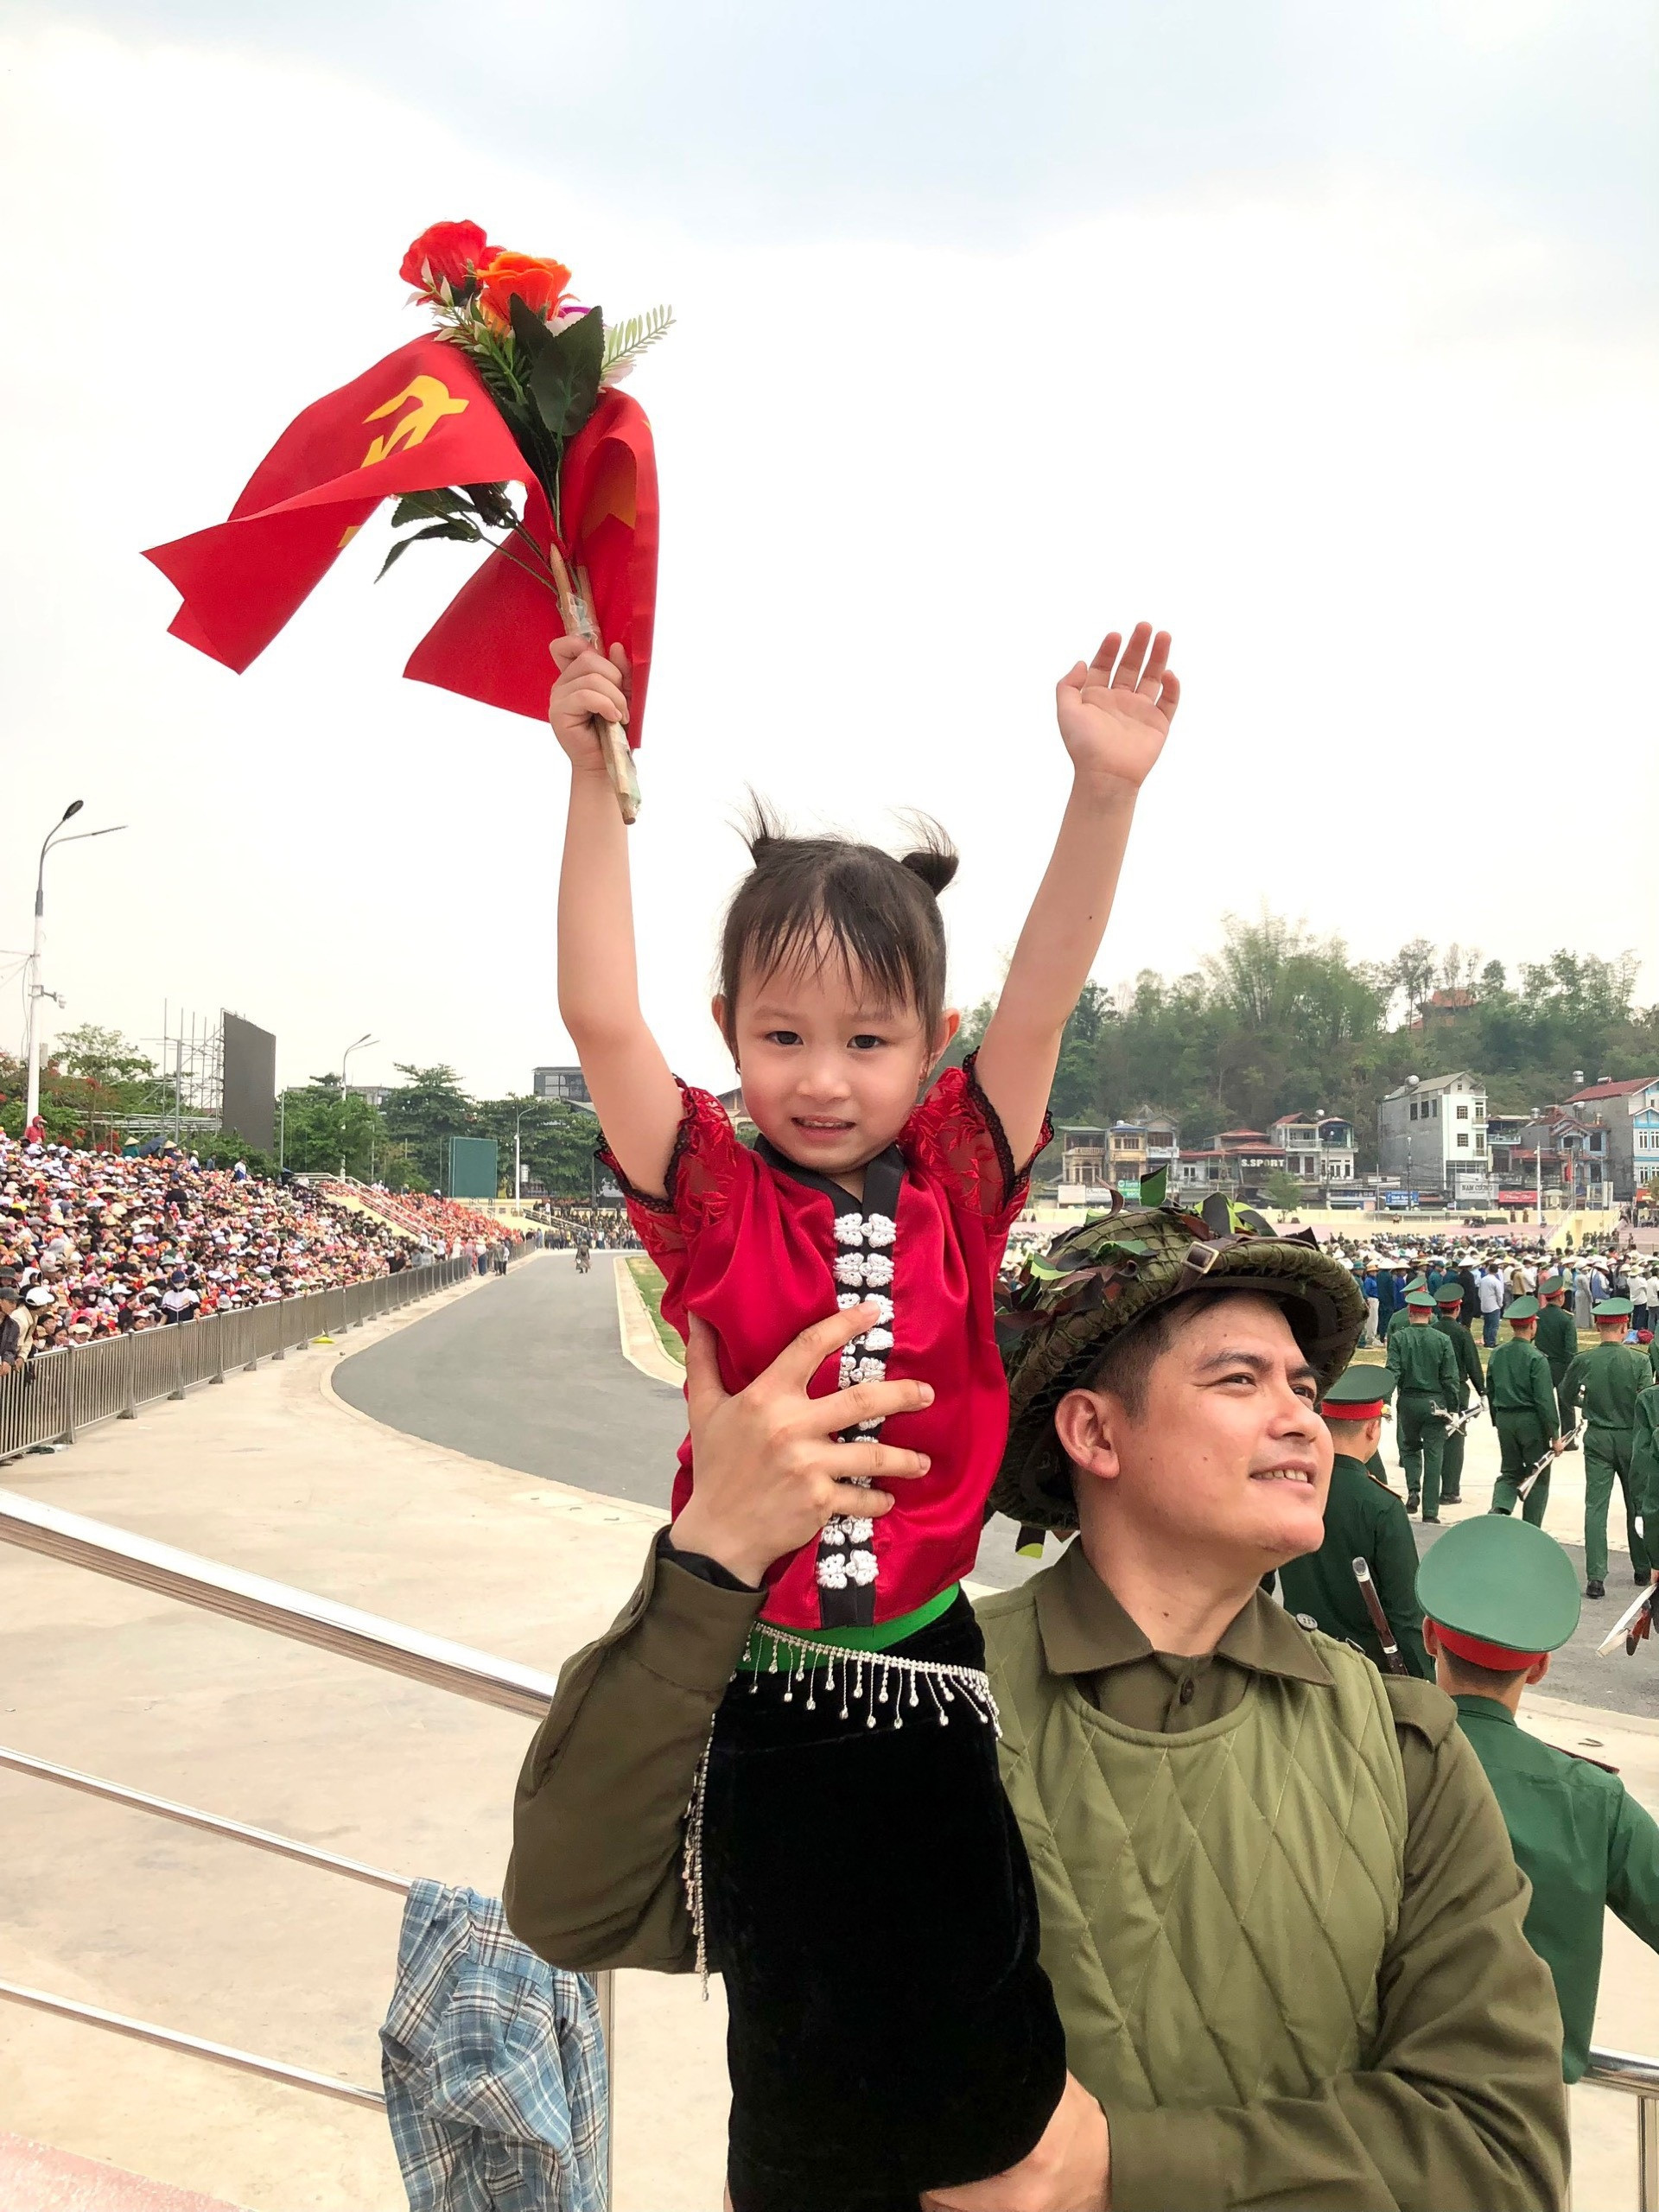 Em bé được chọn làm bé gái tượng đài ở Điện Biên Phủ bất ngờ nổi tiếng - 2